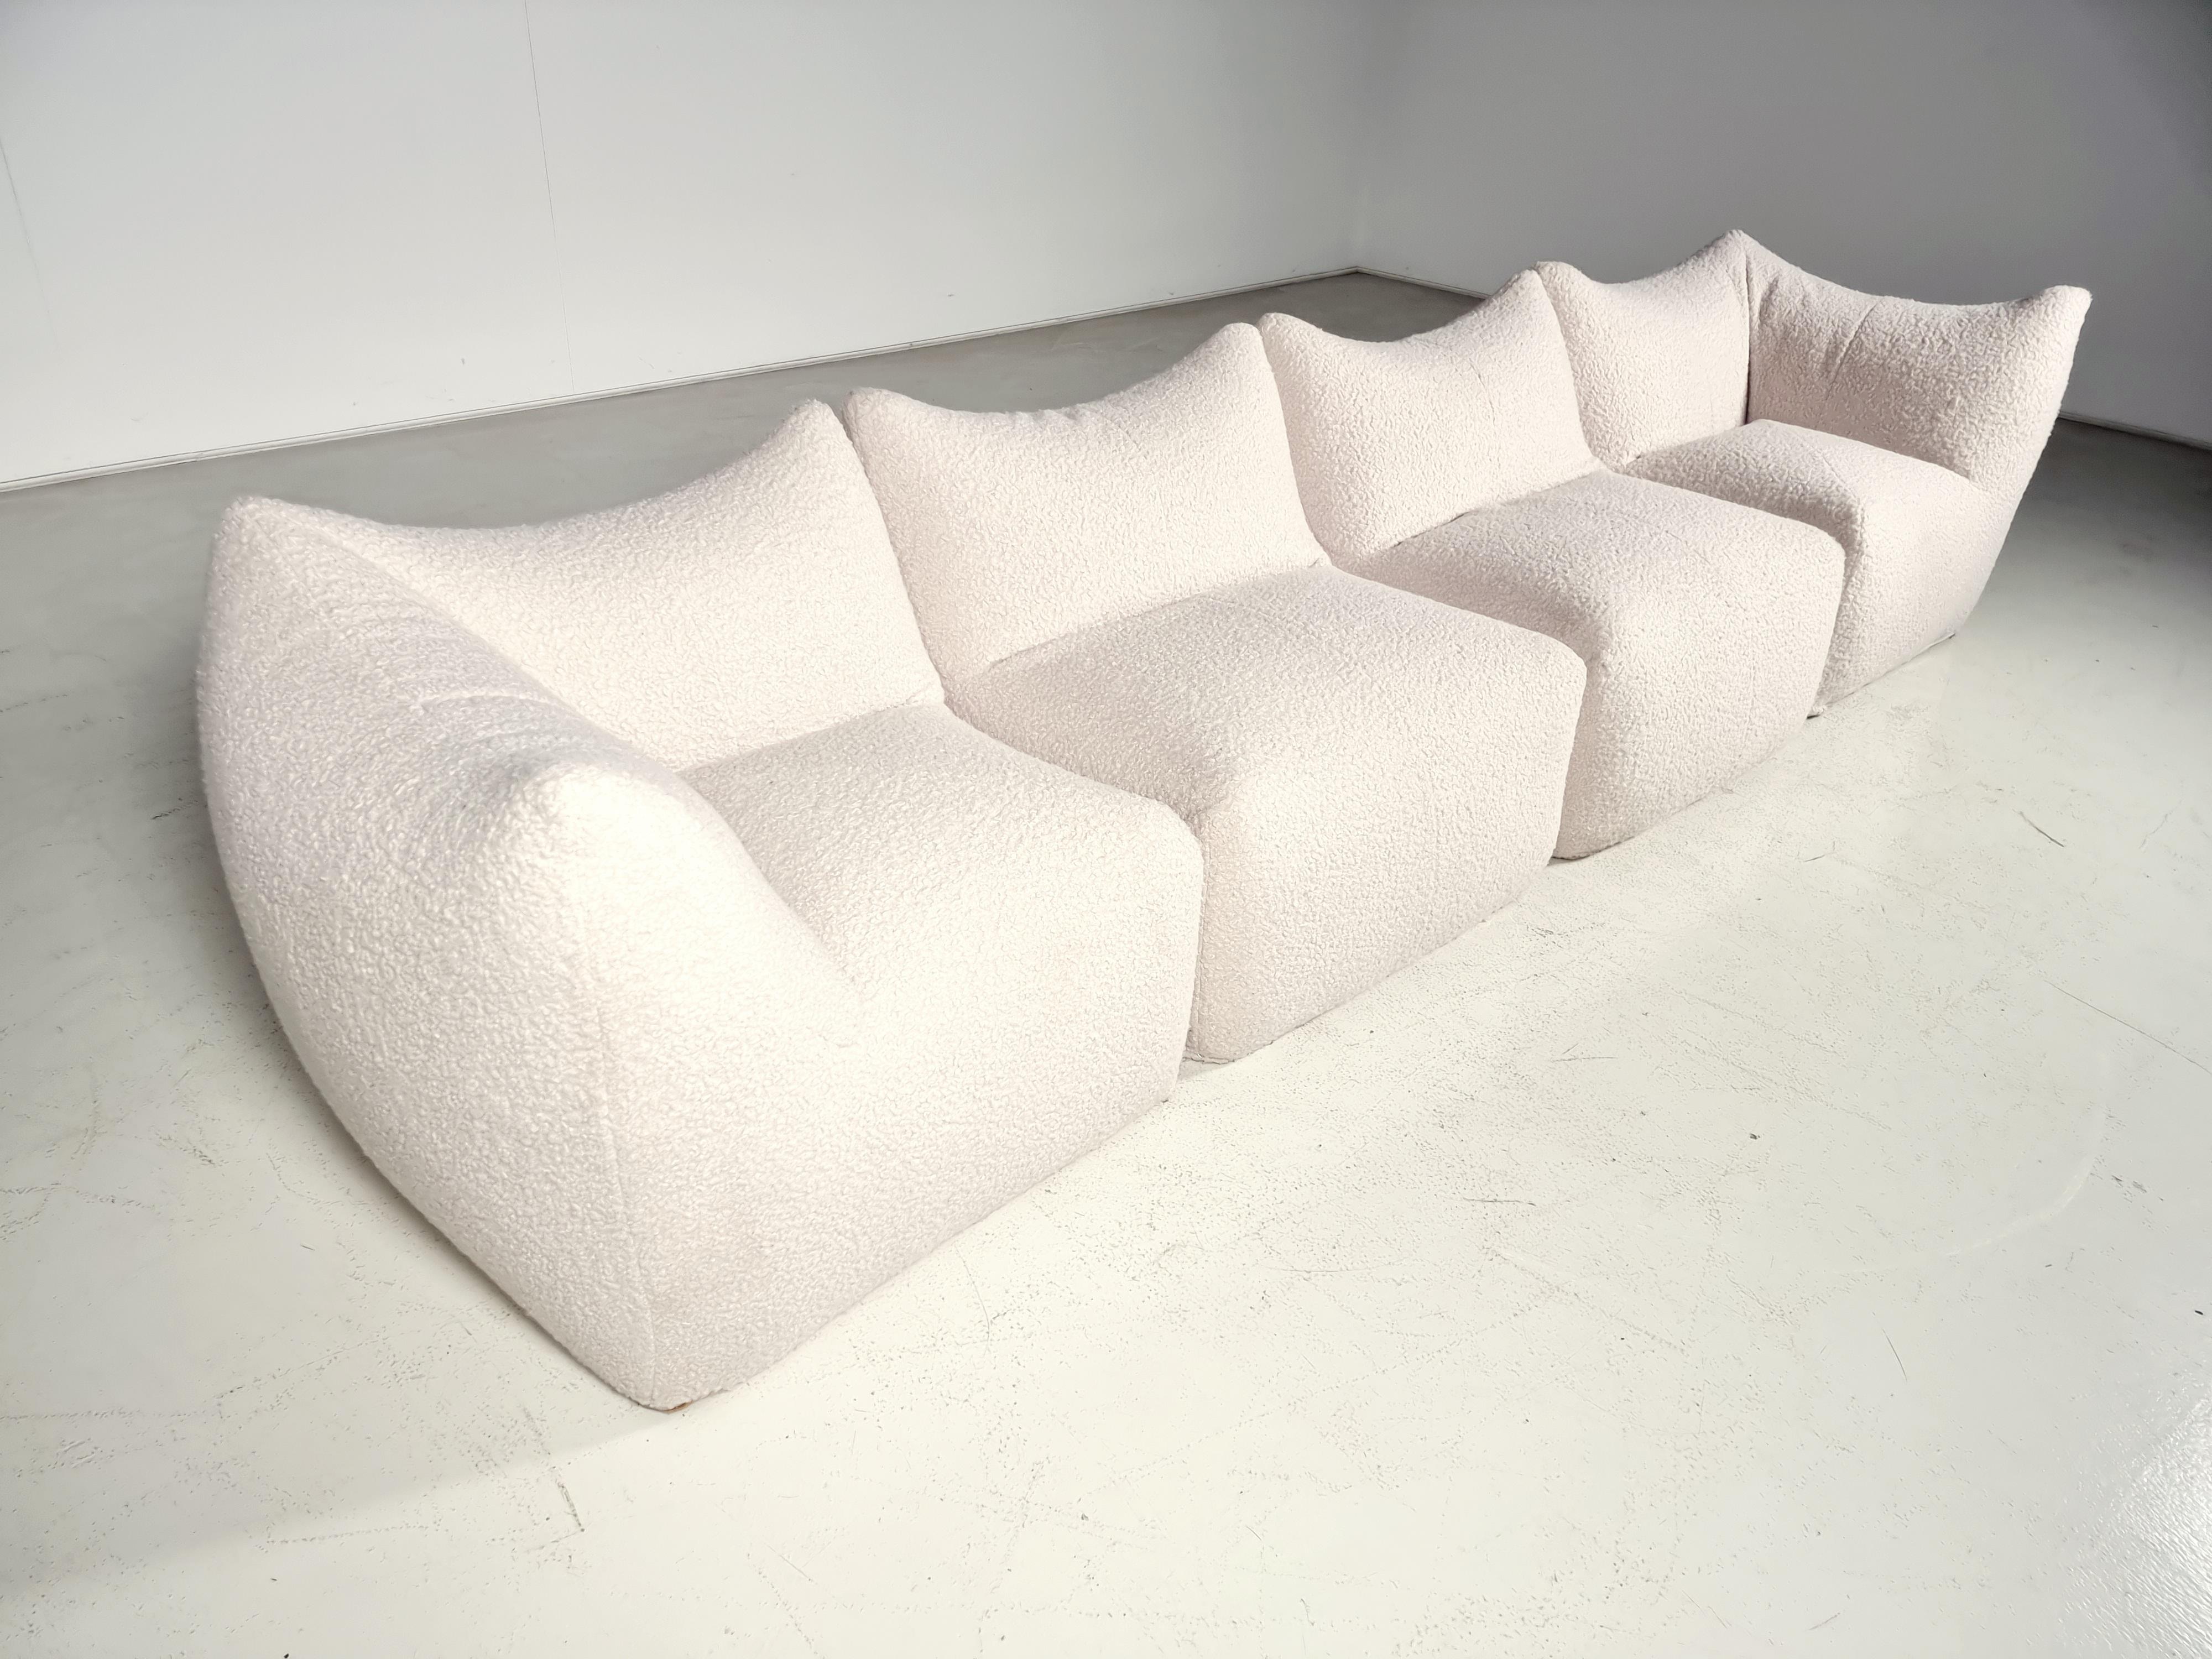 Italian Le Bambole Sectional Sofa by Mario Bellni for B&B Italia, 1970s